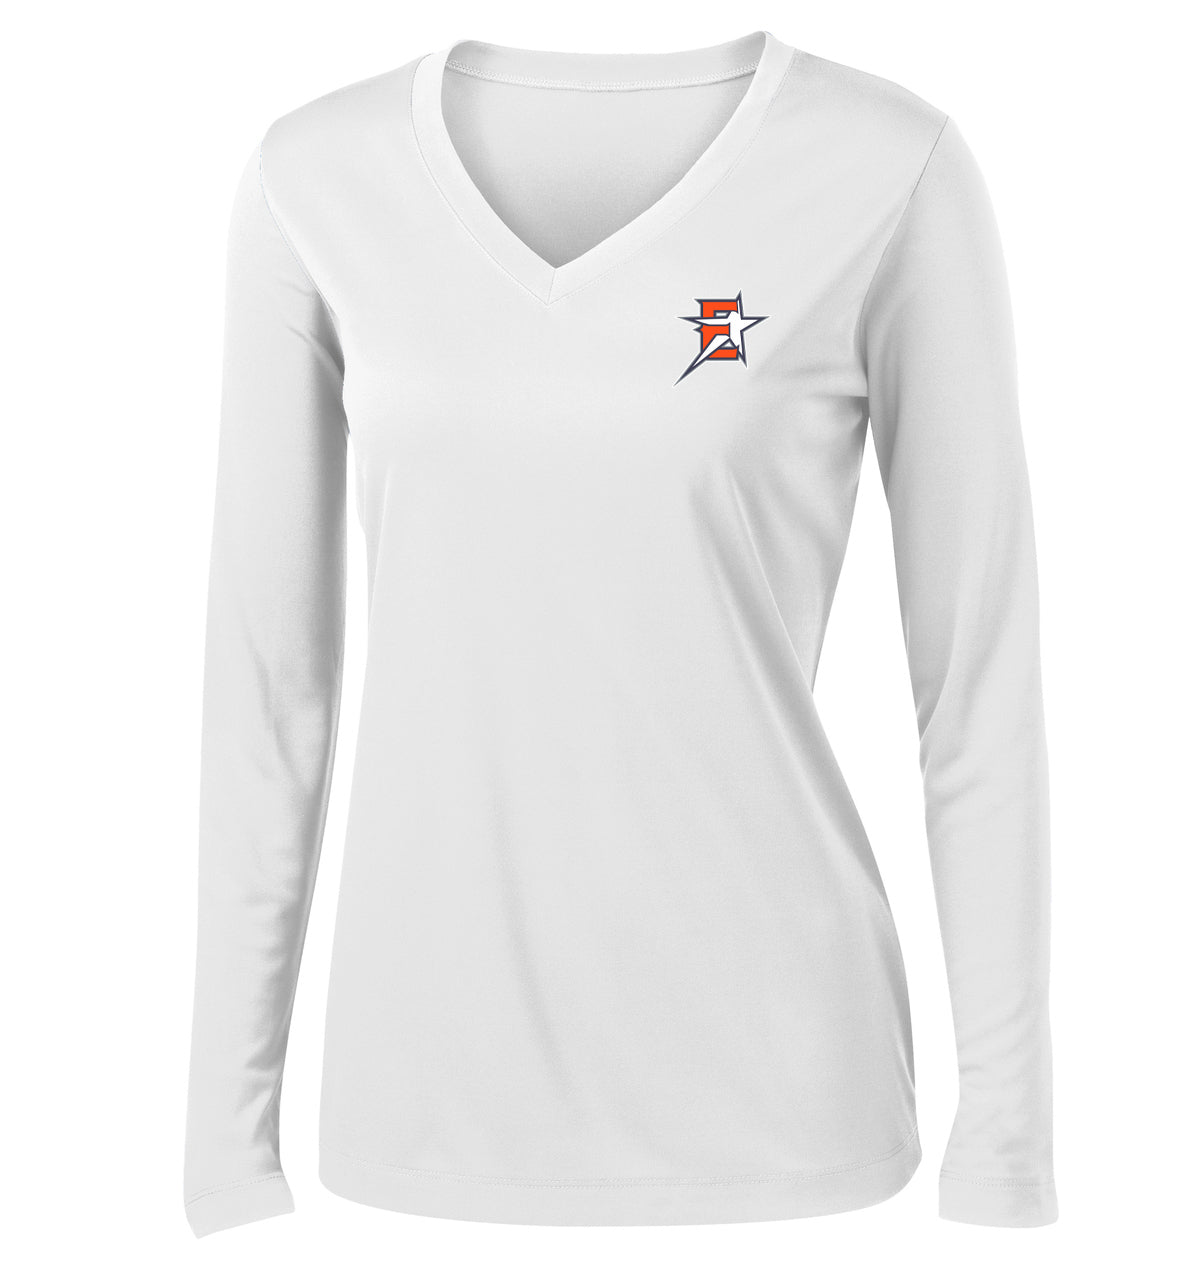 2019 Eastvale Girl's Softball Women's Long Sleeve Performance Shirt